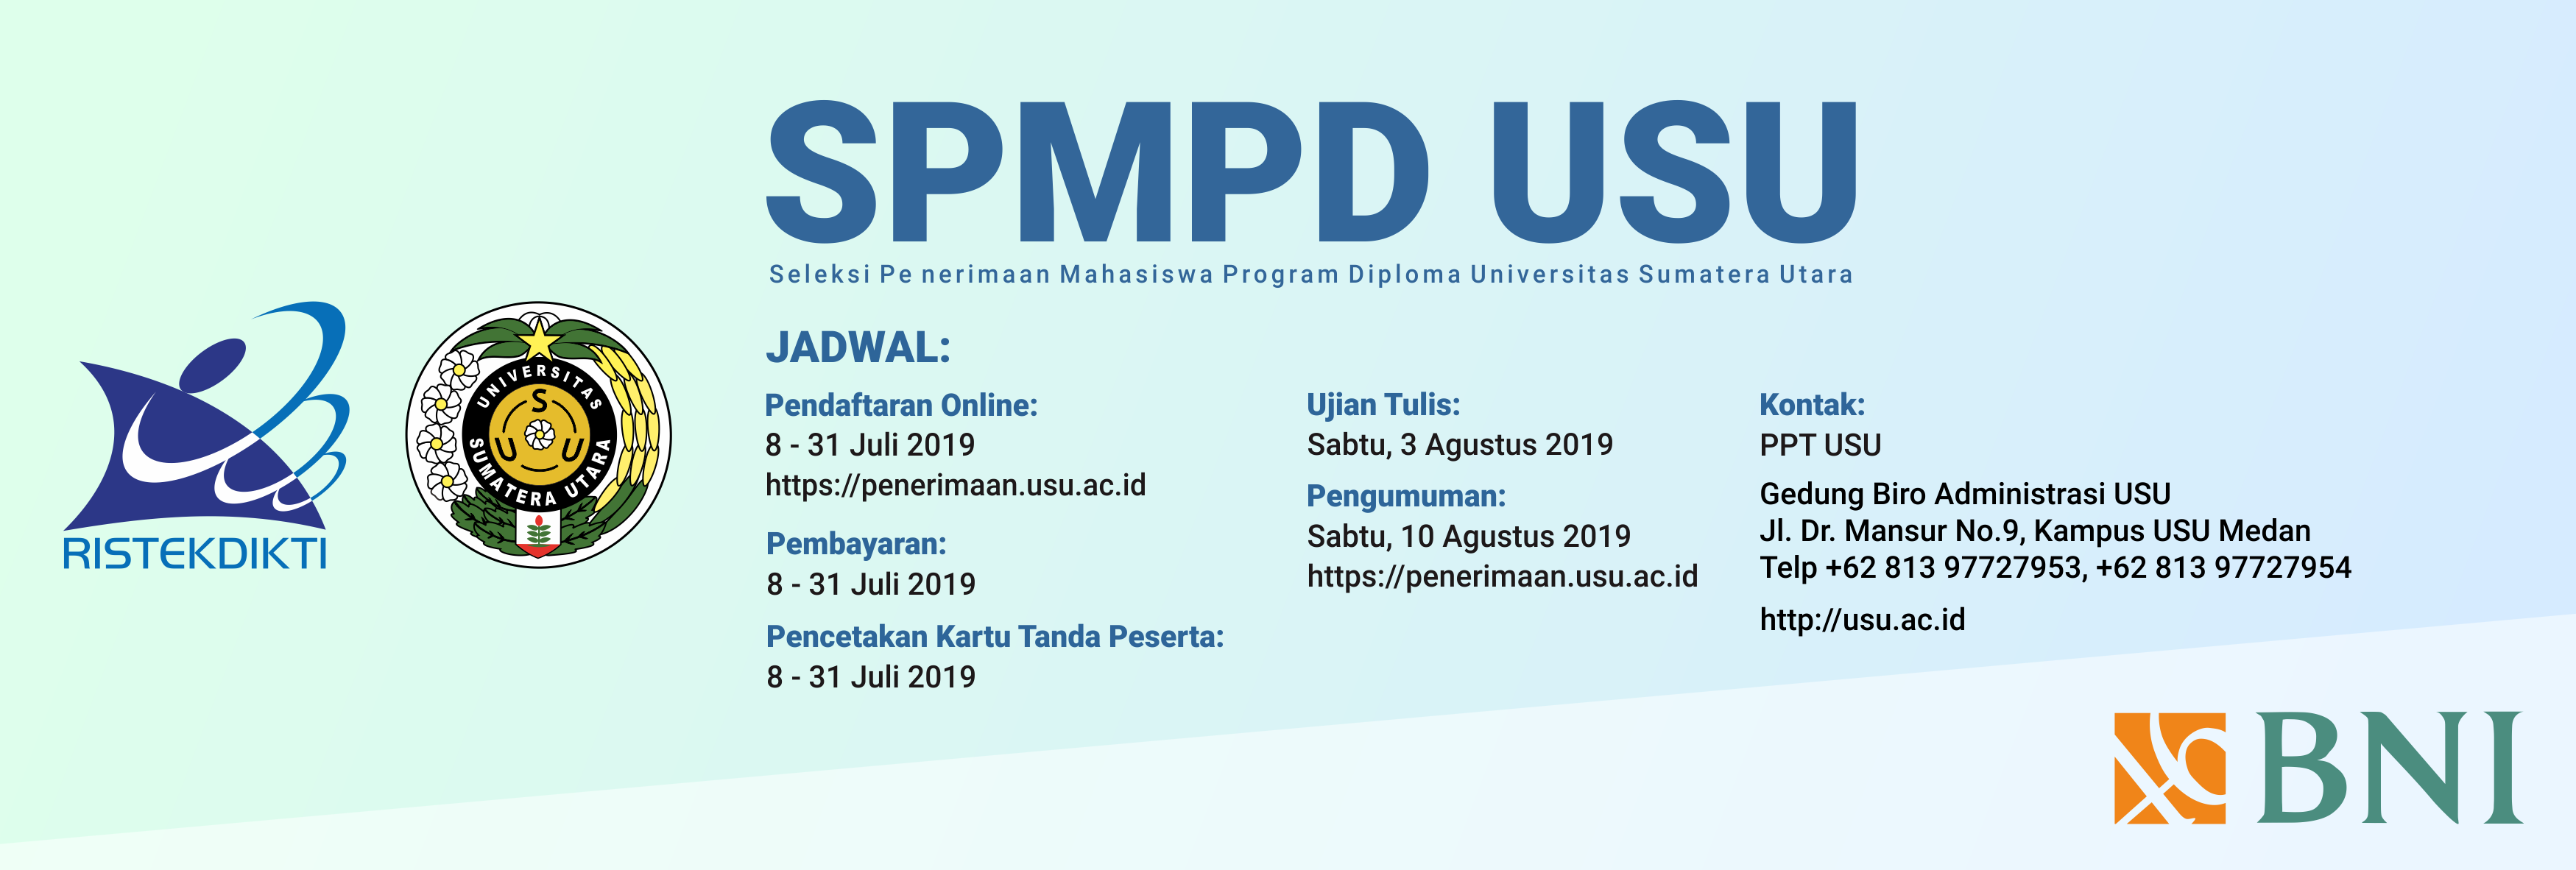 Seleksi Penerimaan Mahasiswa Diploma Universitas Sumatera Utara Tahun 2019